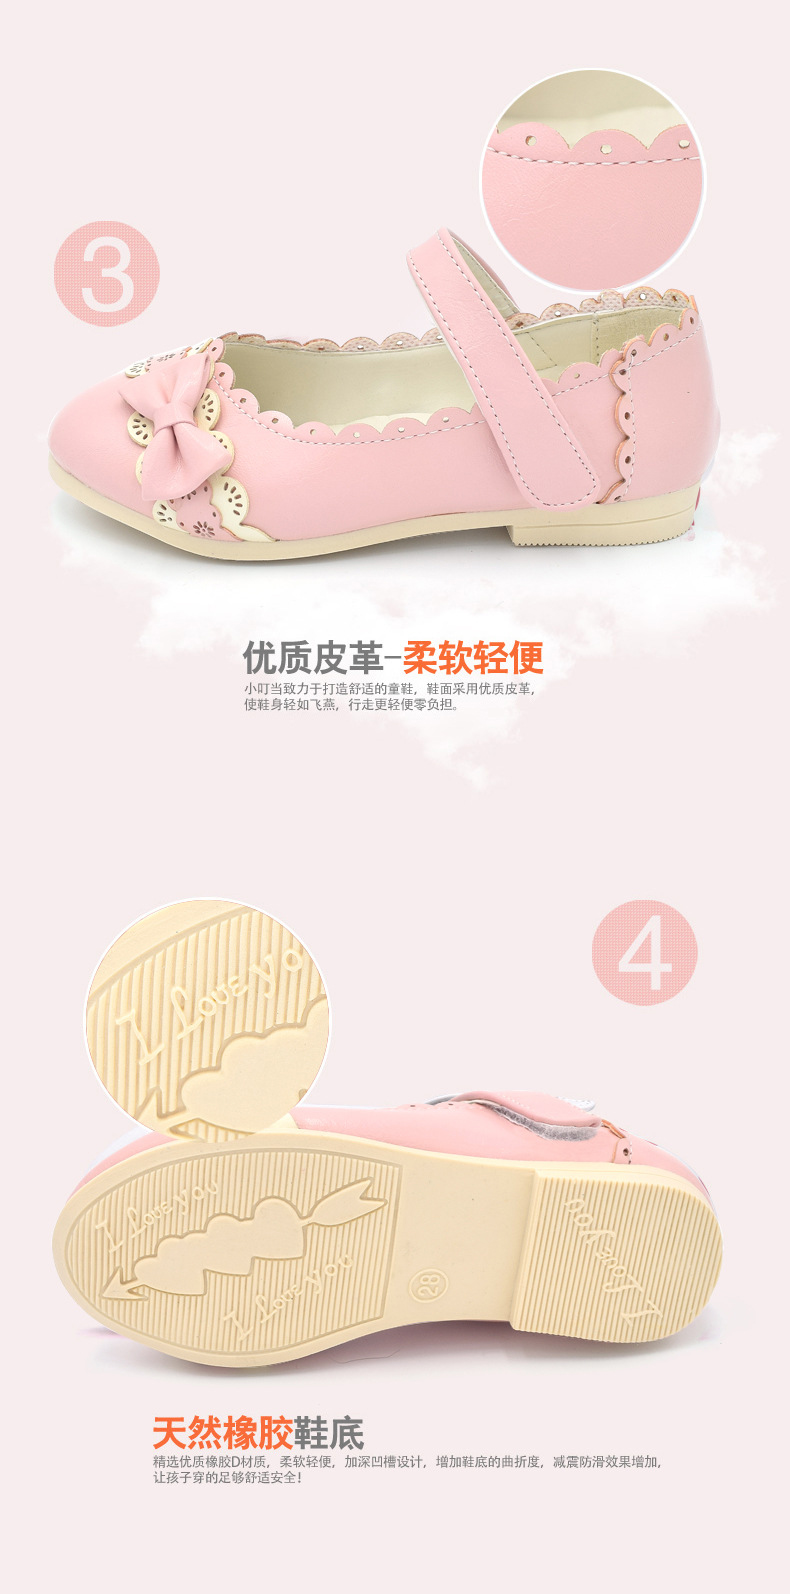 森然2015外贸秋季韩版童鞋,产品编号36565